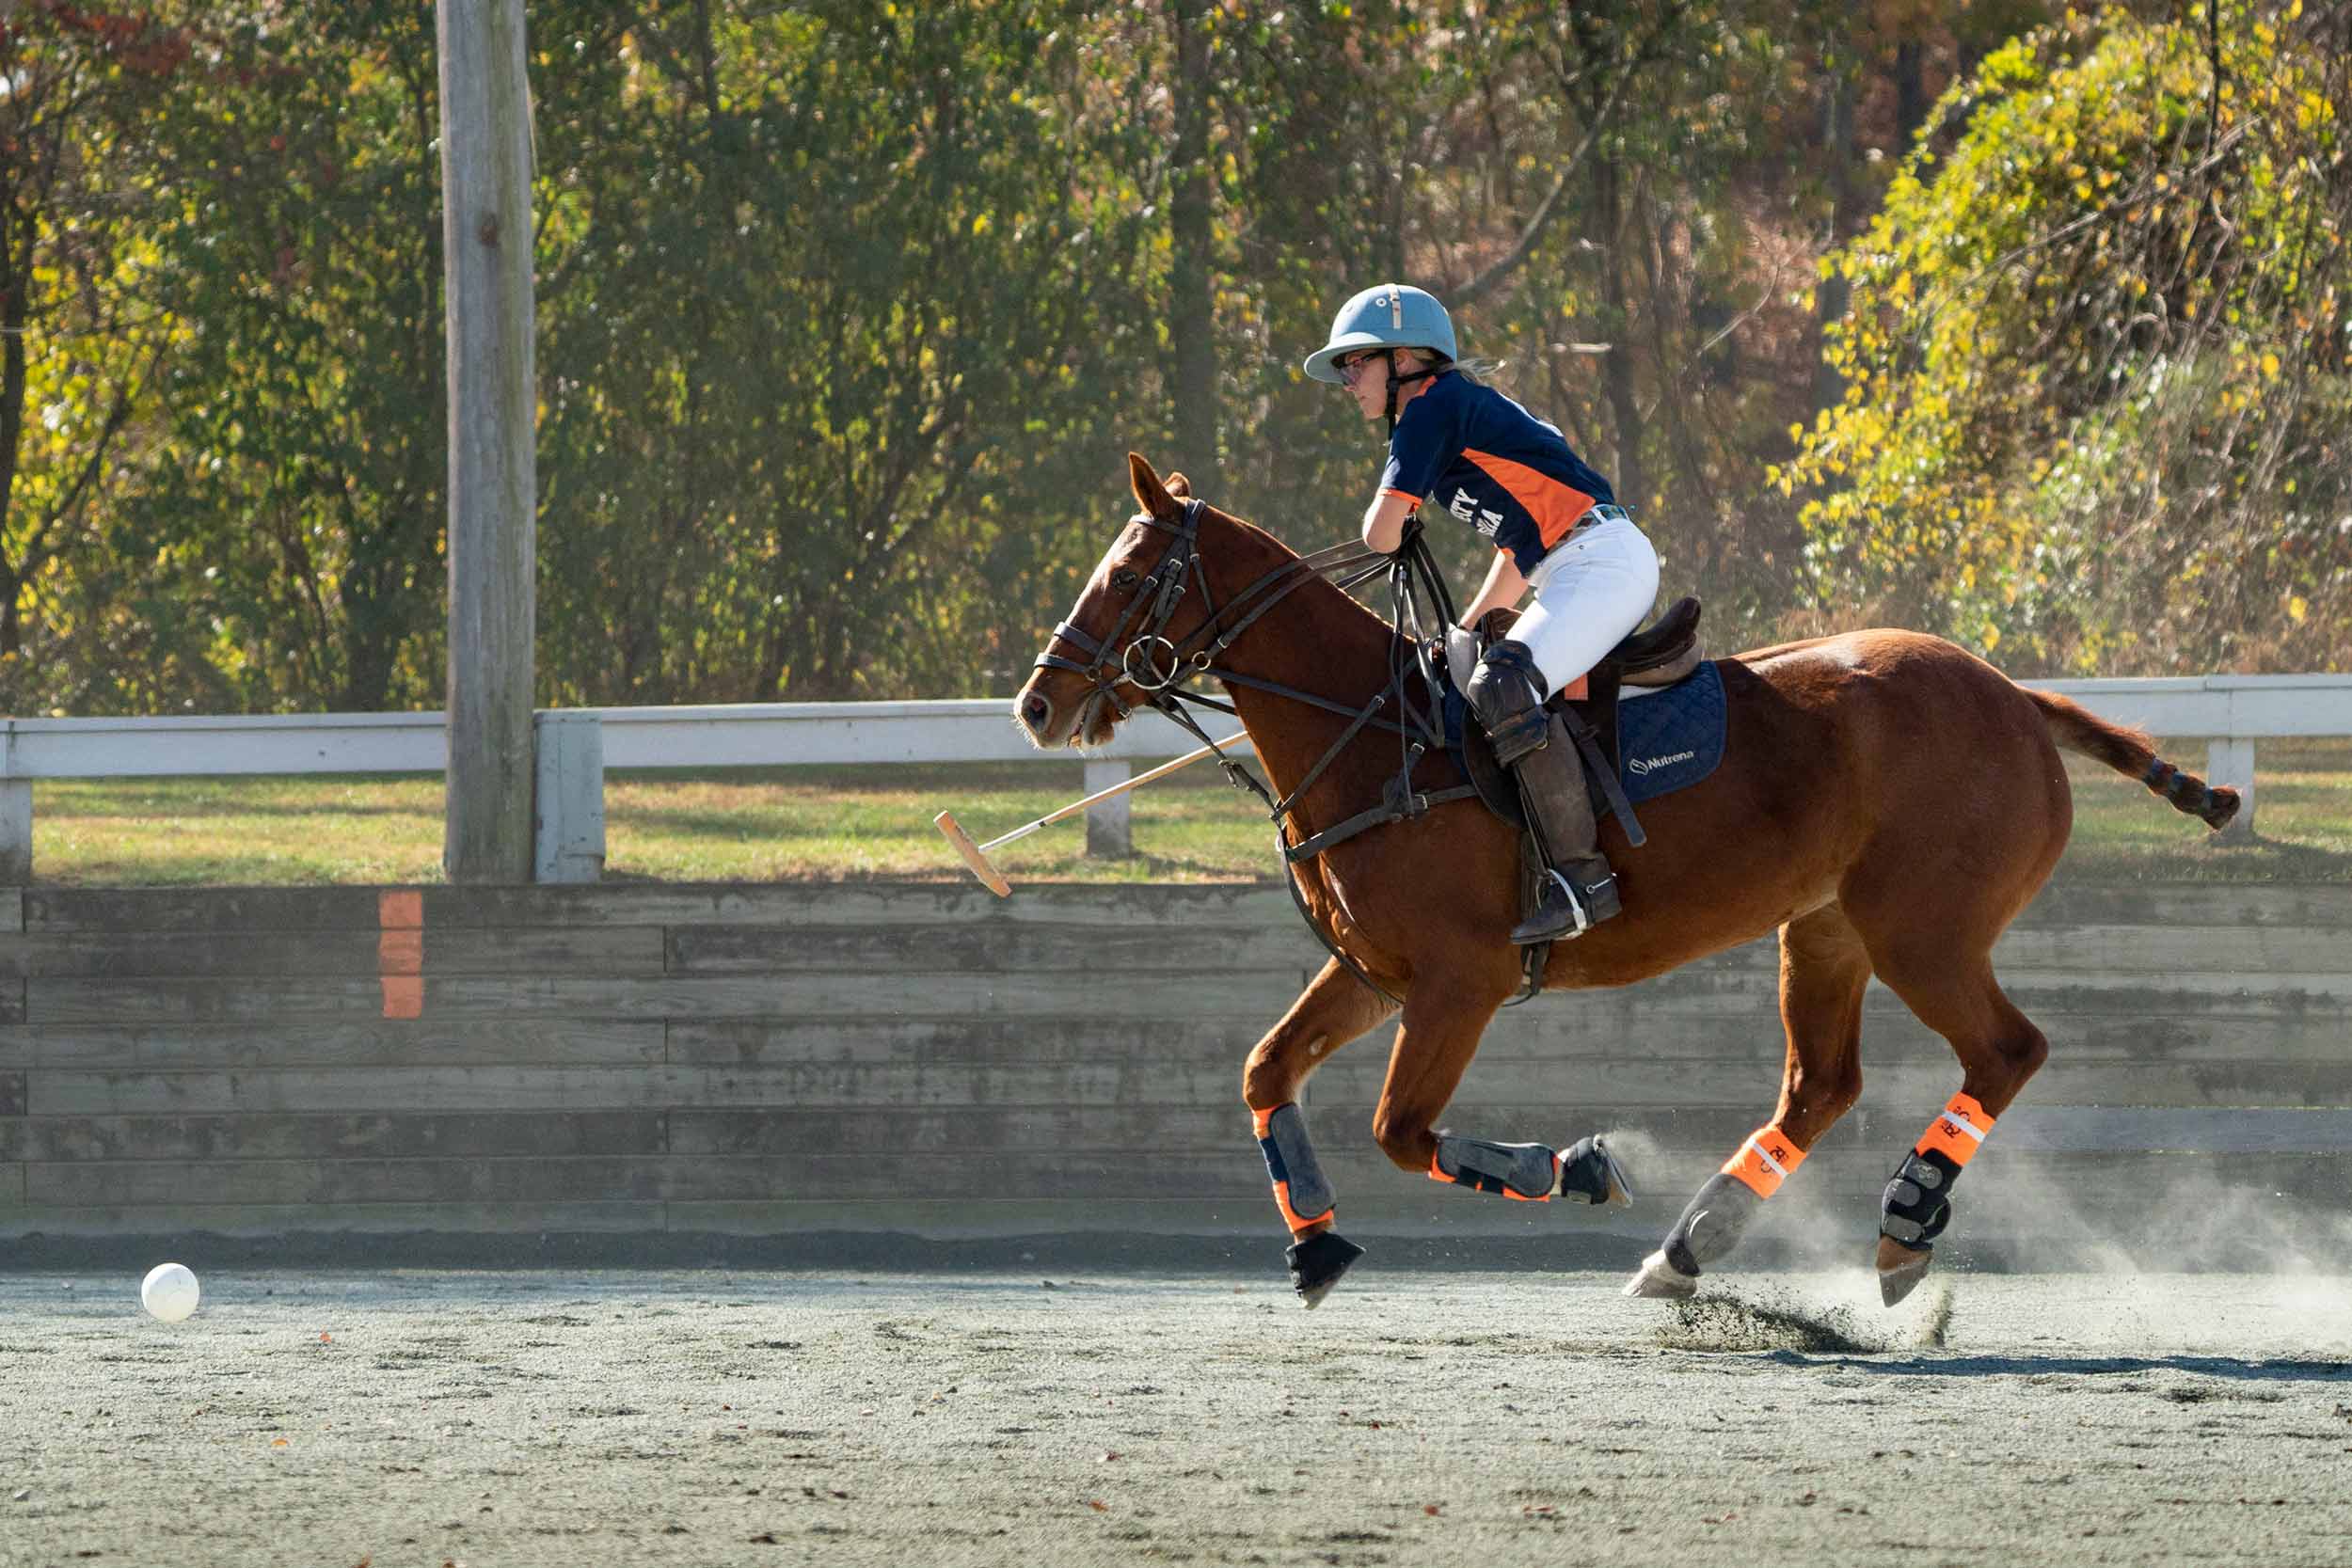 Polo rider riding on a horse